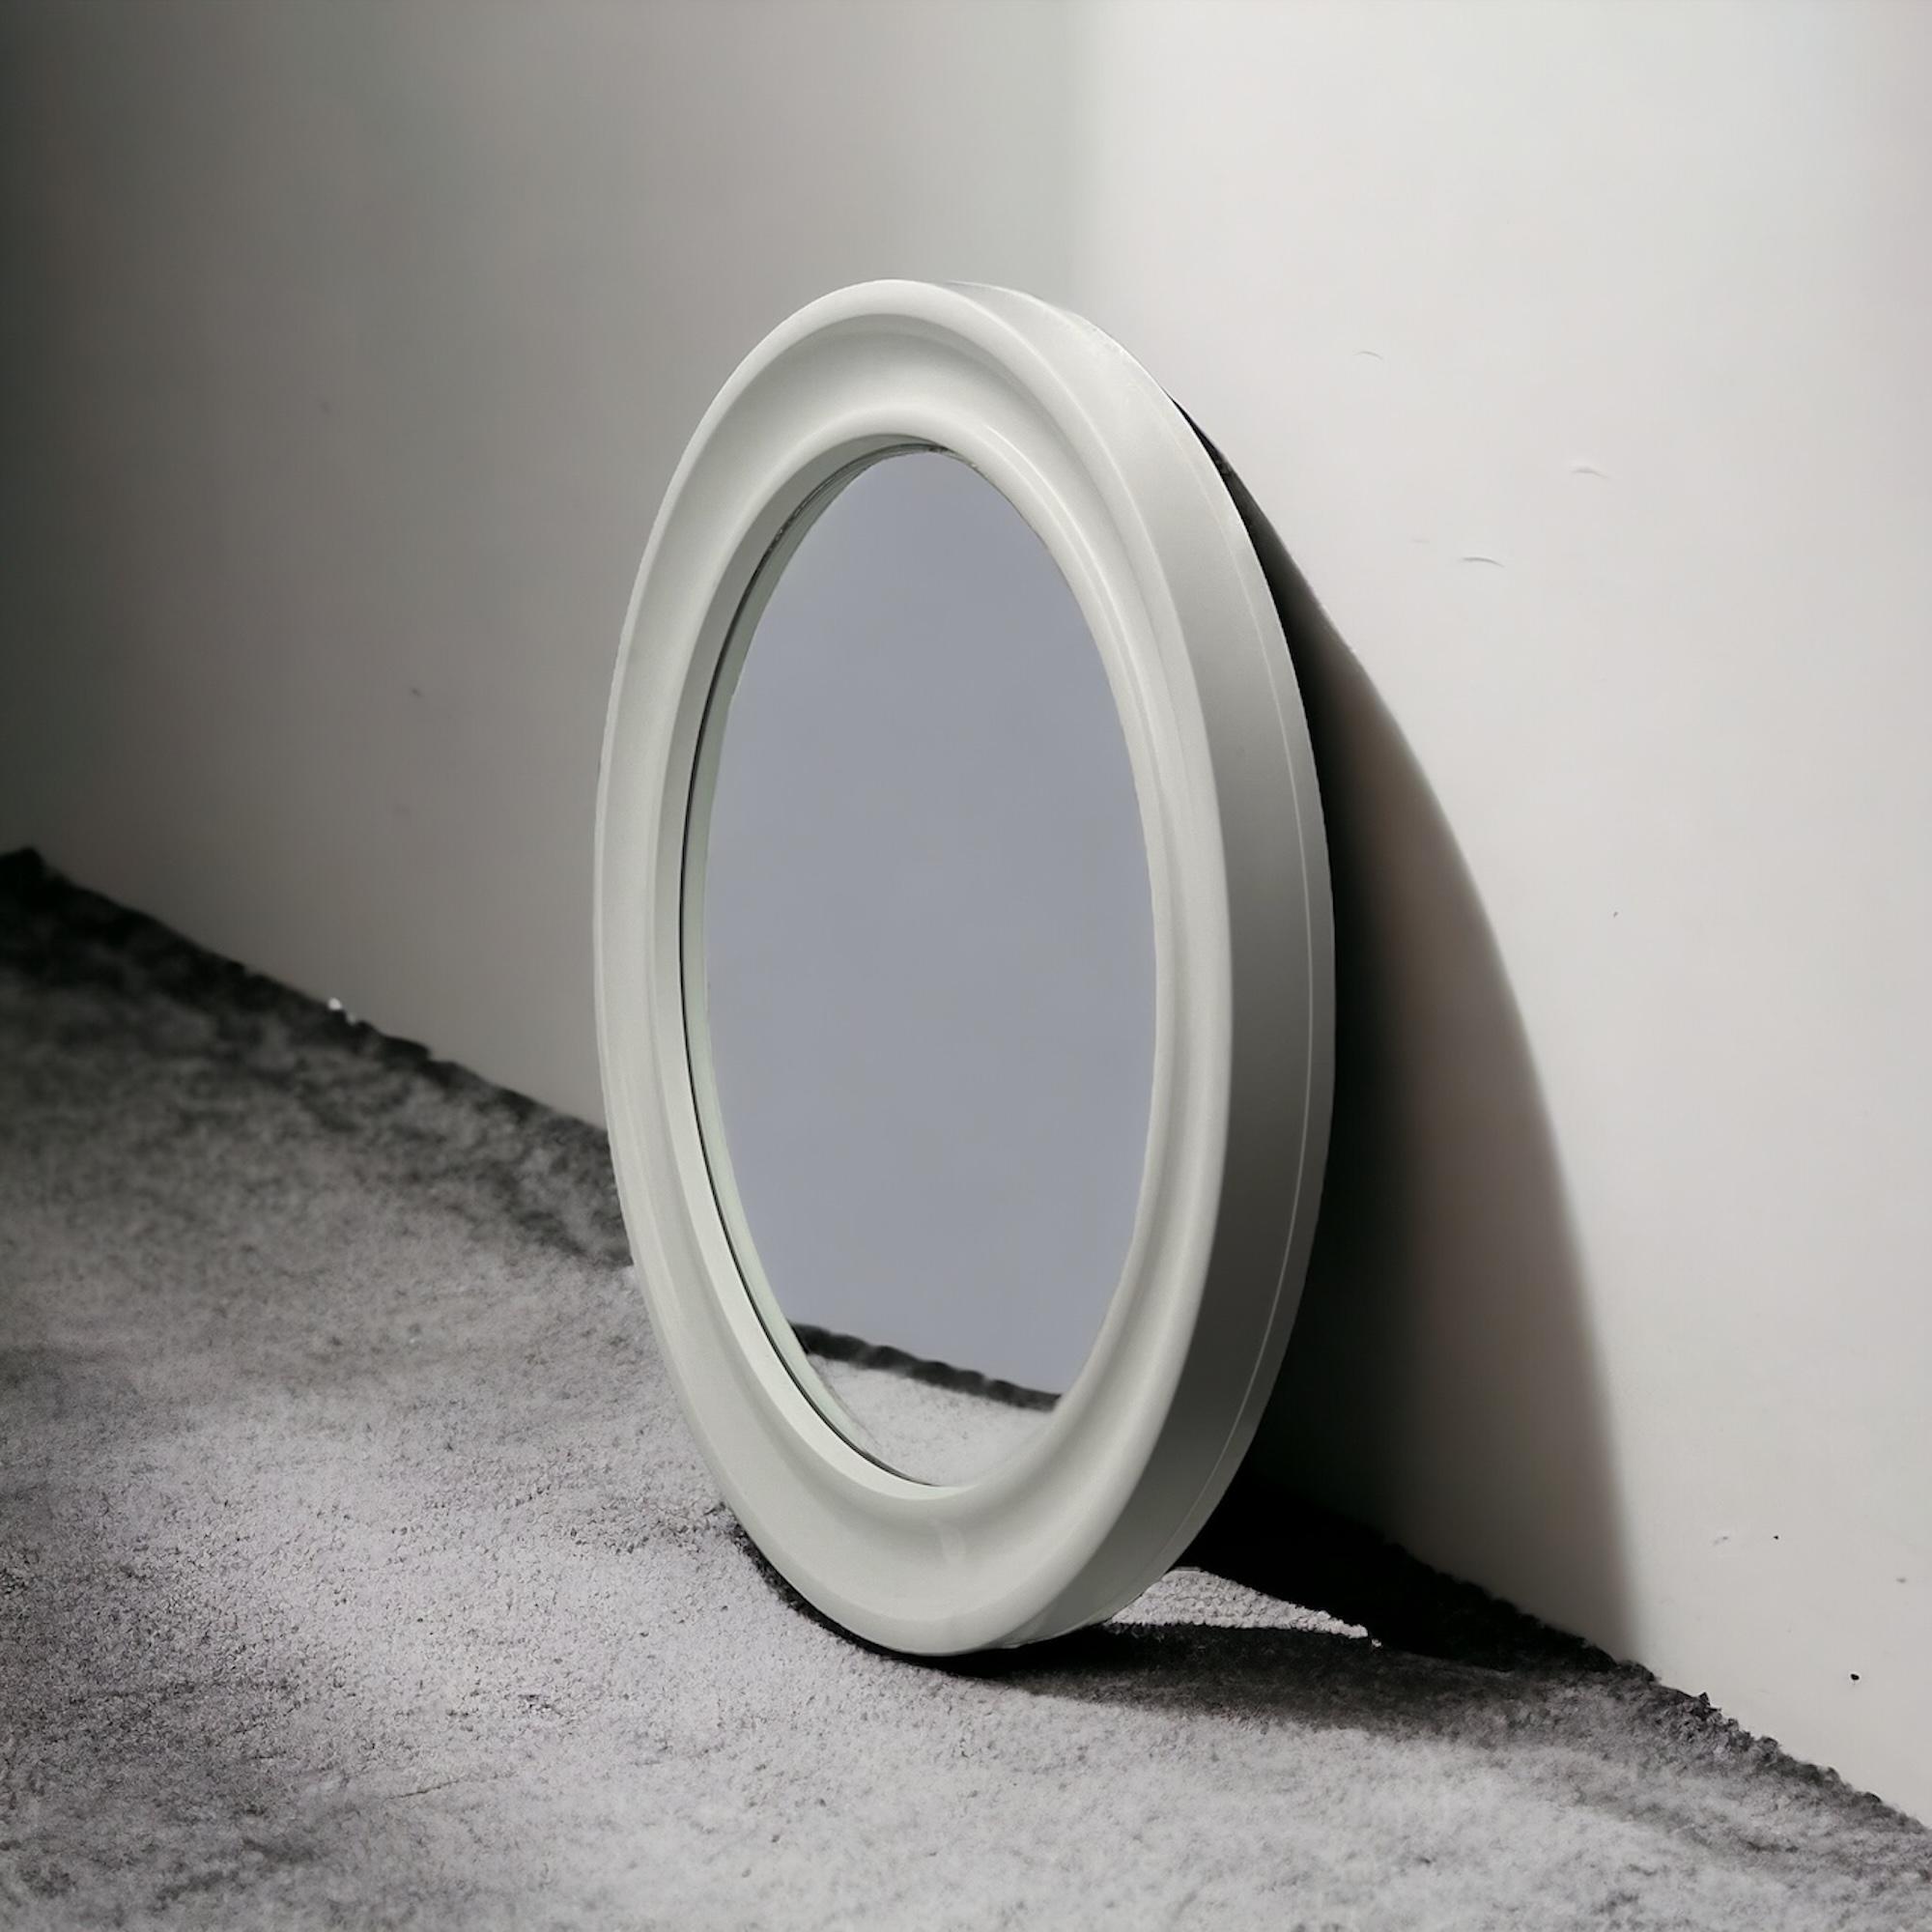 Carrara & Matta 'America' Wall Mirror in off-white - 70s Patent Bakelite Design 1